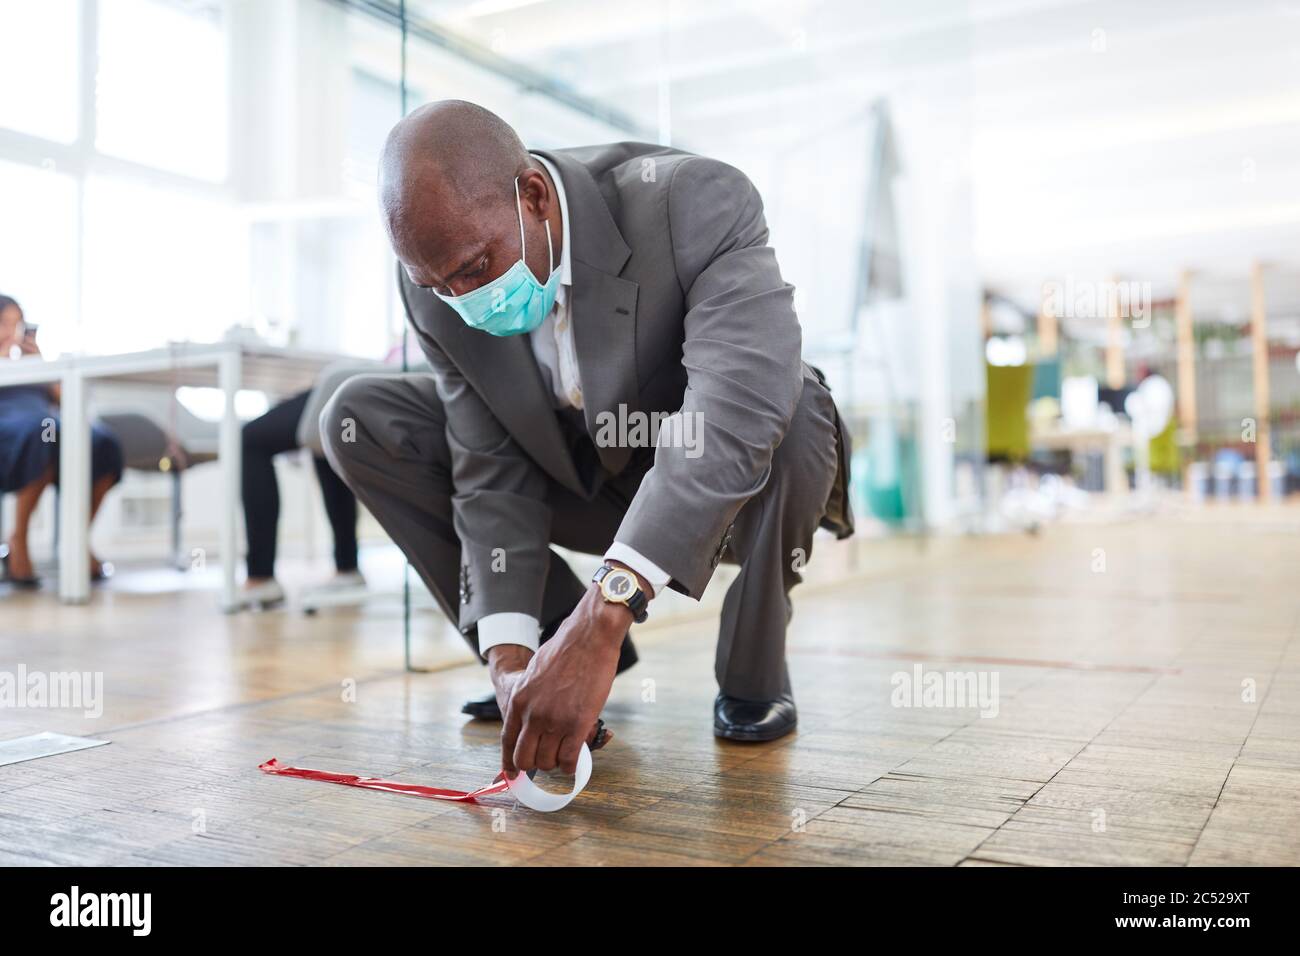 L'homme d'affaires africain marque le sol du bureau avec du ruban adhésif pour la distance en raison de Covid-19 Banque D'Images